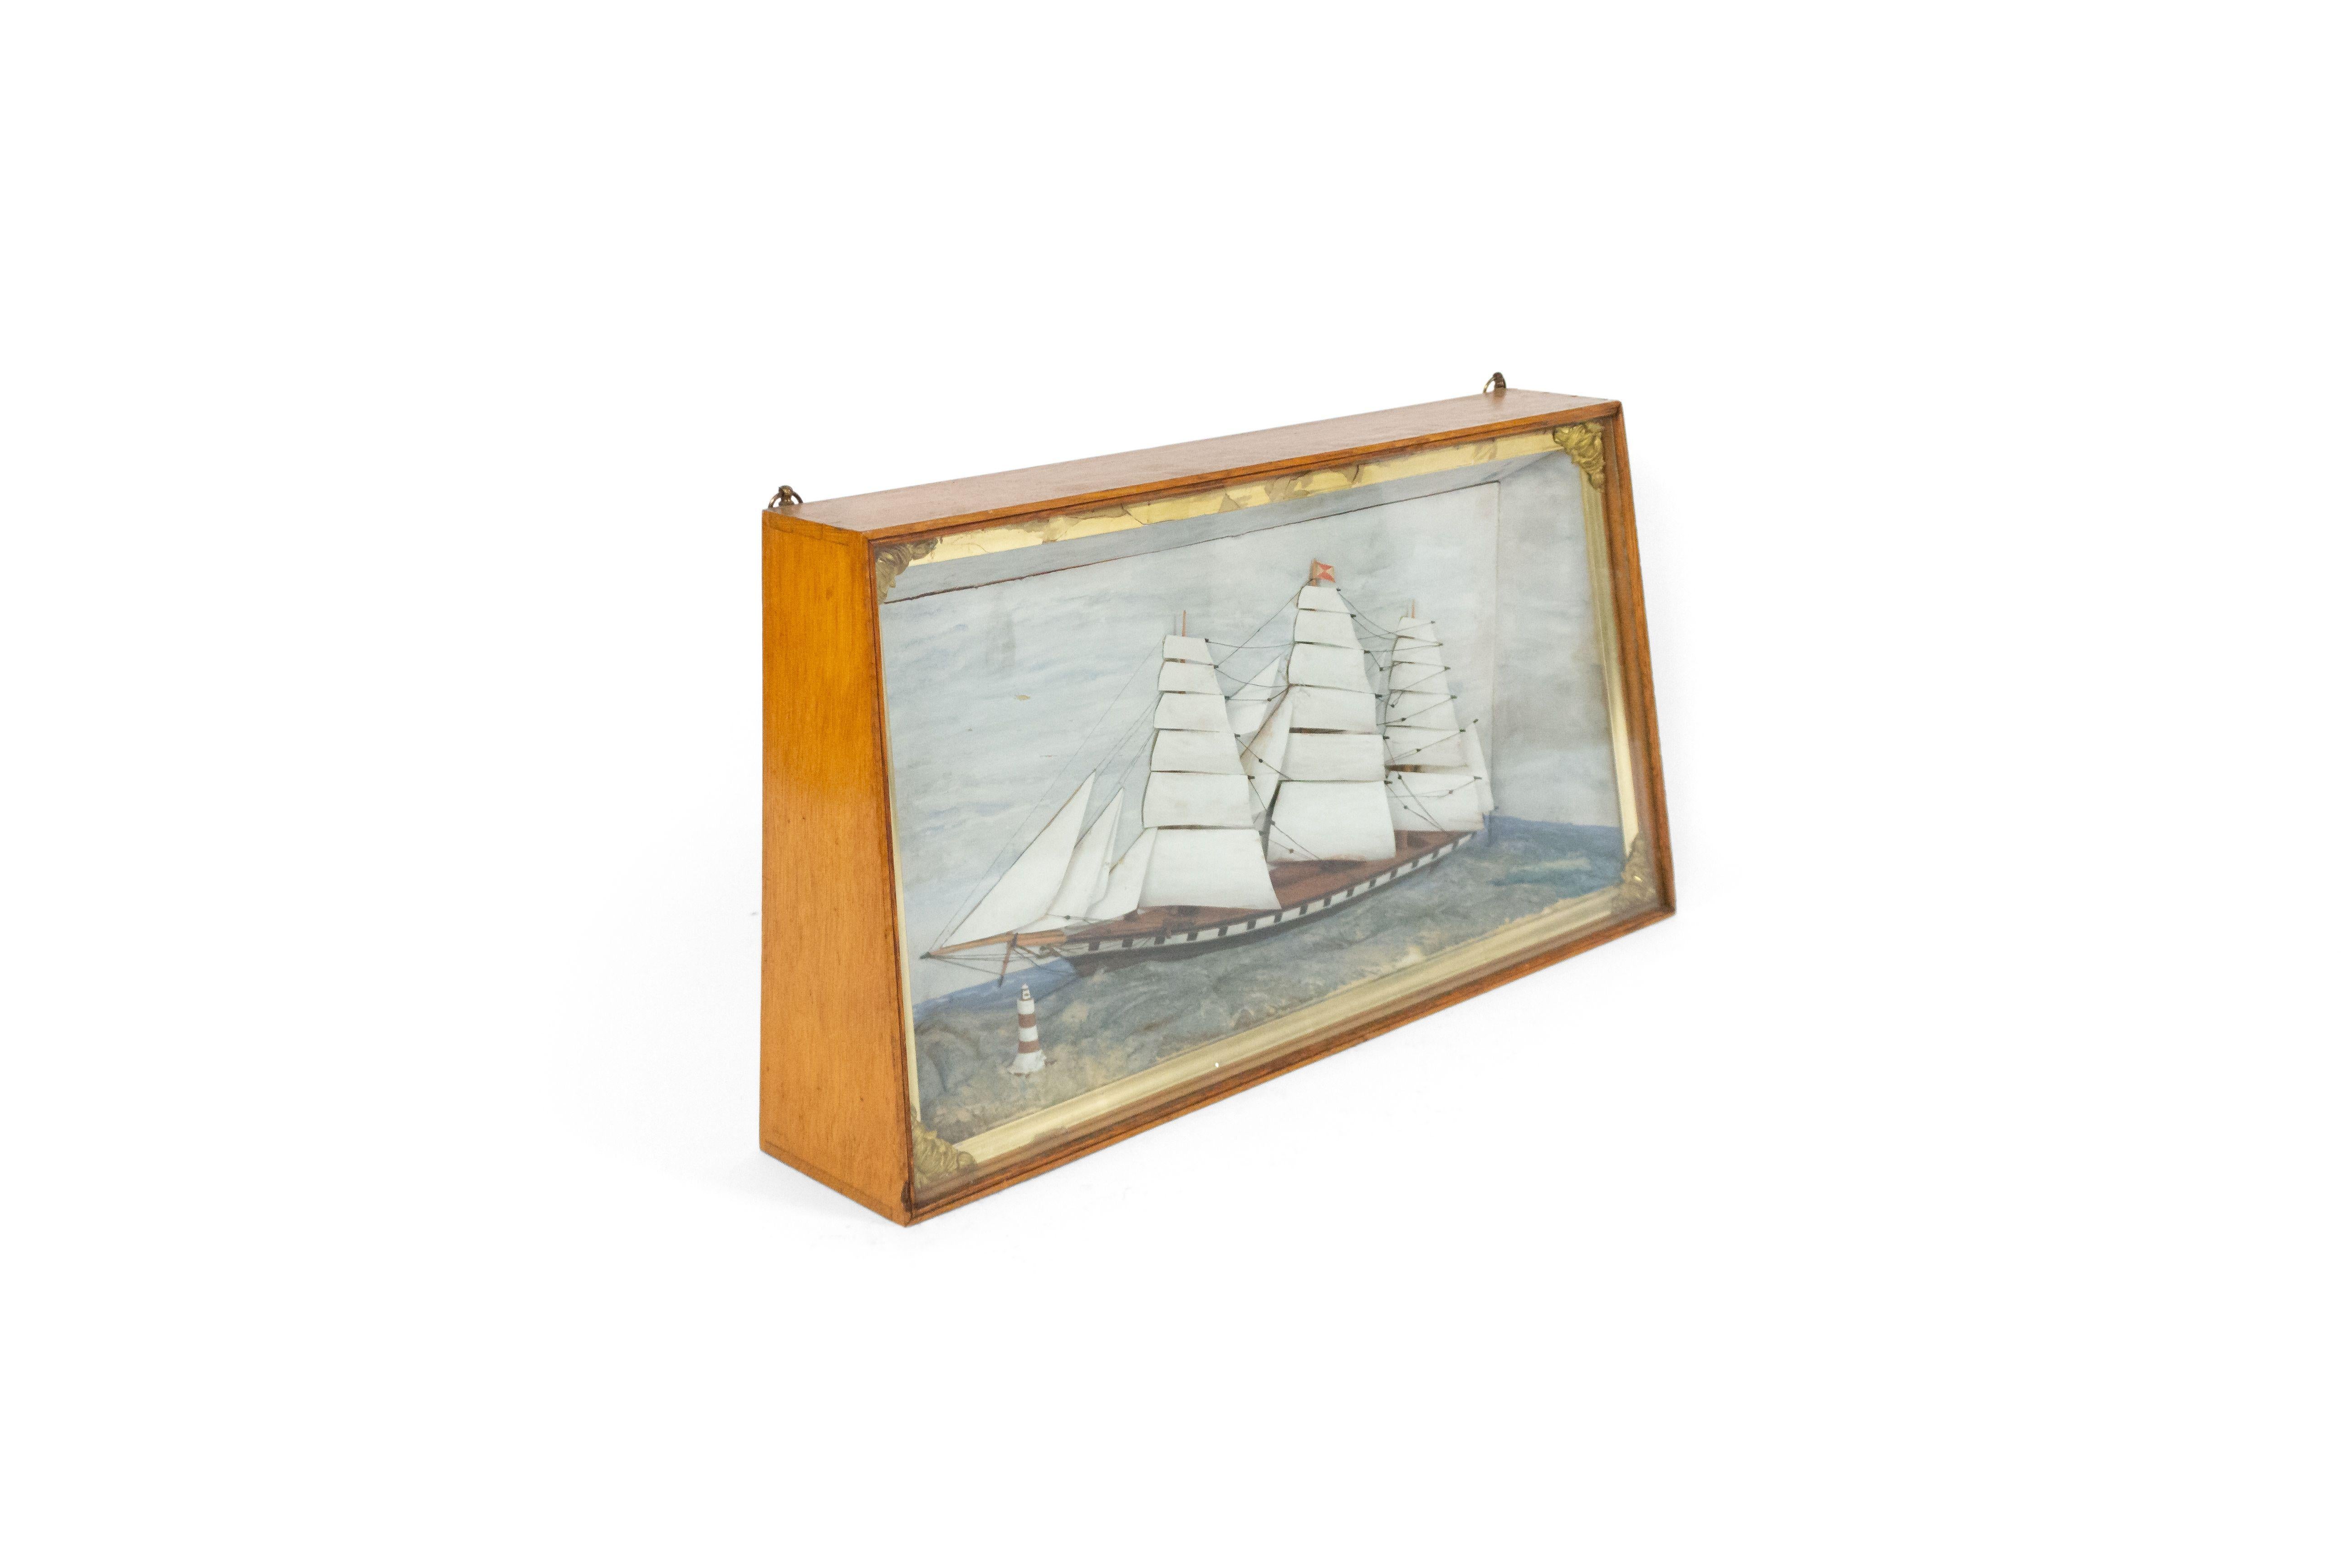 Diorama victorien de style campagne anglaise dans une caisse en chêne représentant un bateau à voile/vapeur avec un petit phare.
 